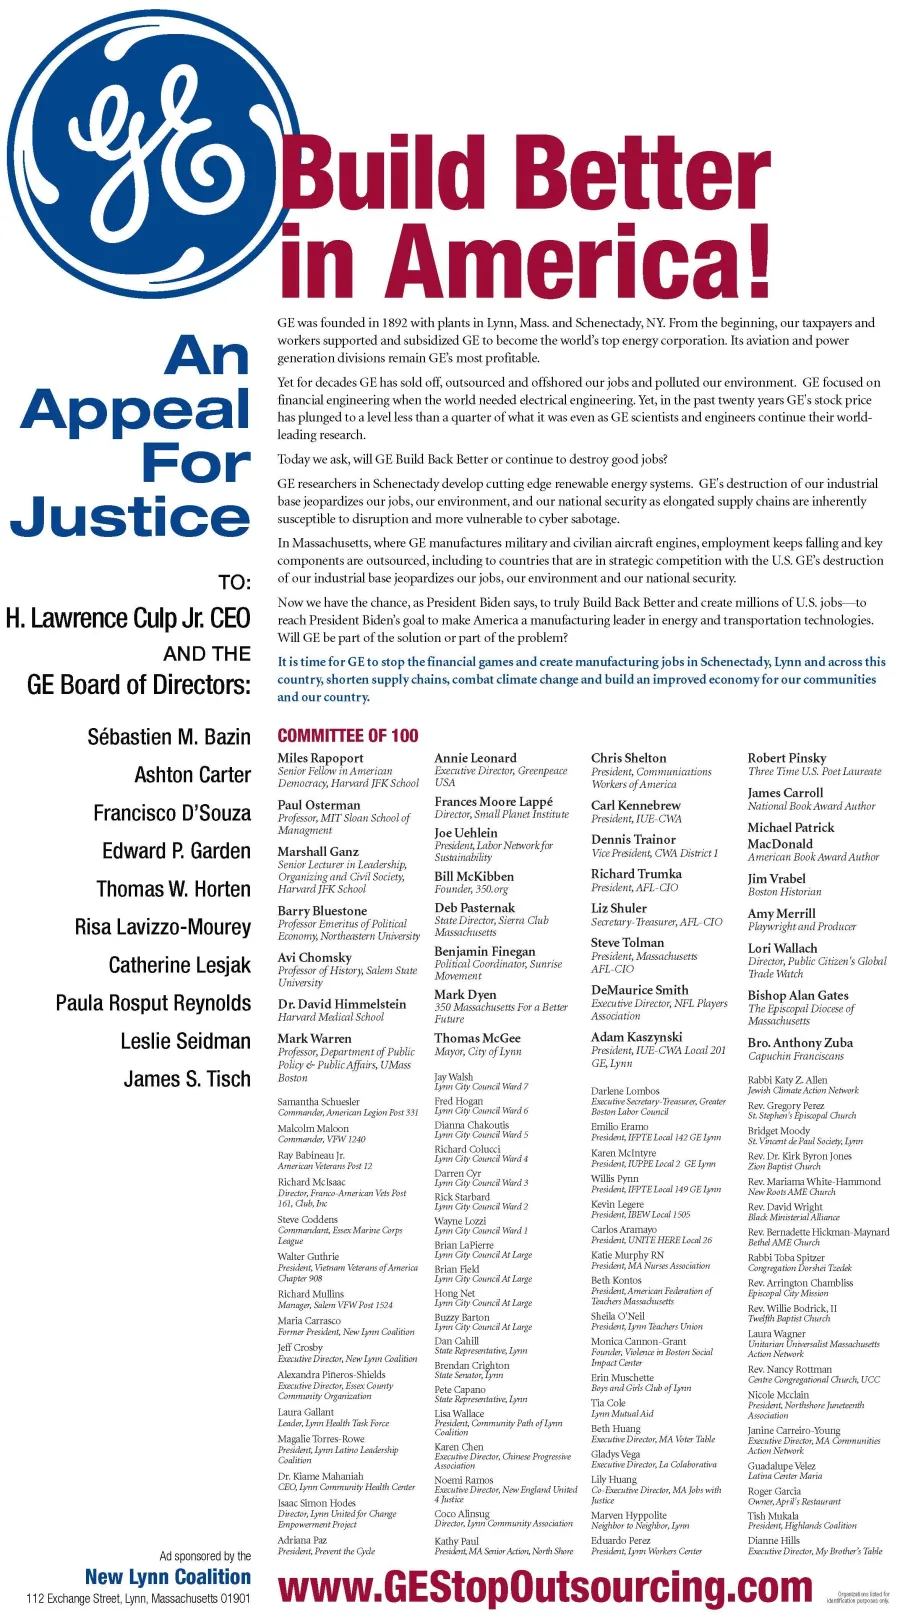 ge-appealforjustice-globe-page_3_ran_4.15.2020.jpg